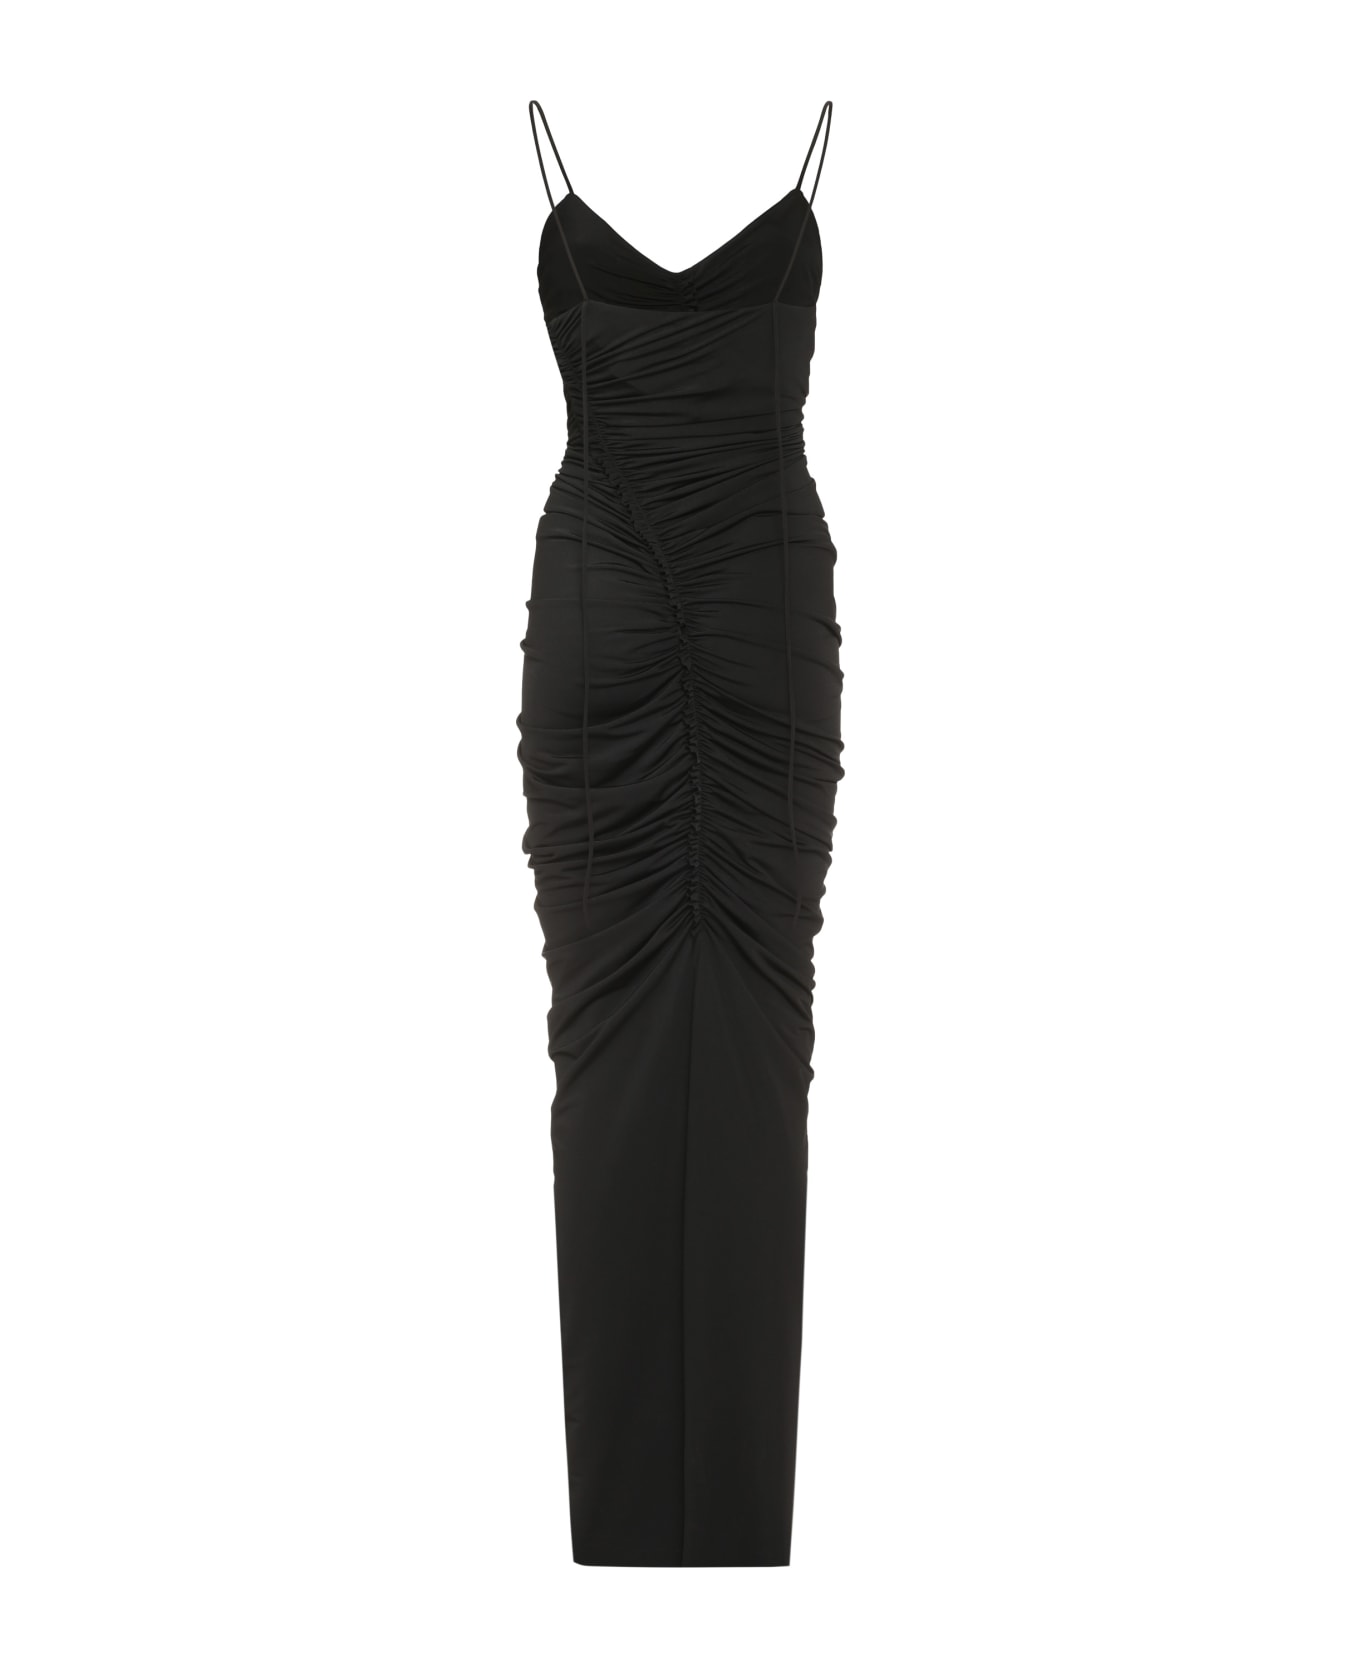 Victoria Beckham Jersey Dress - Nero